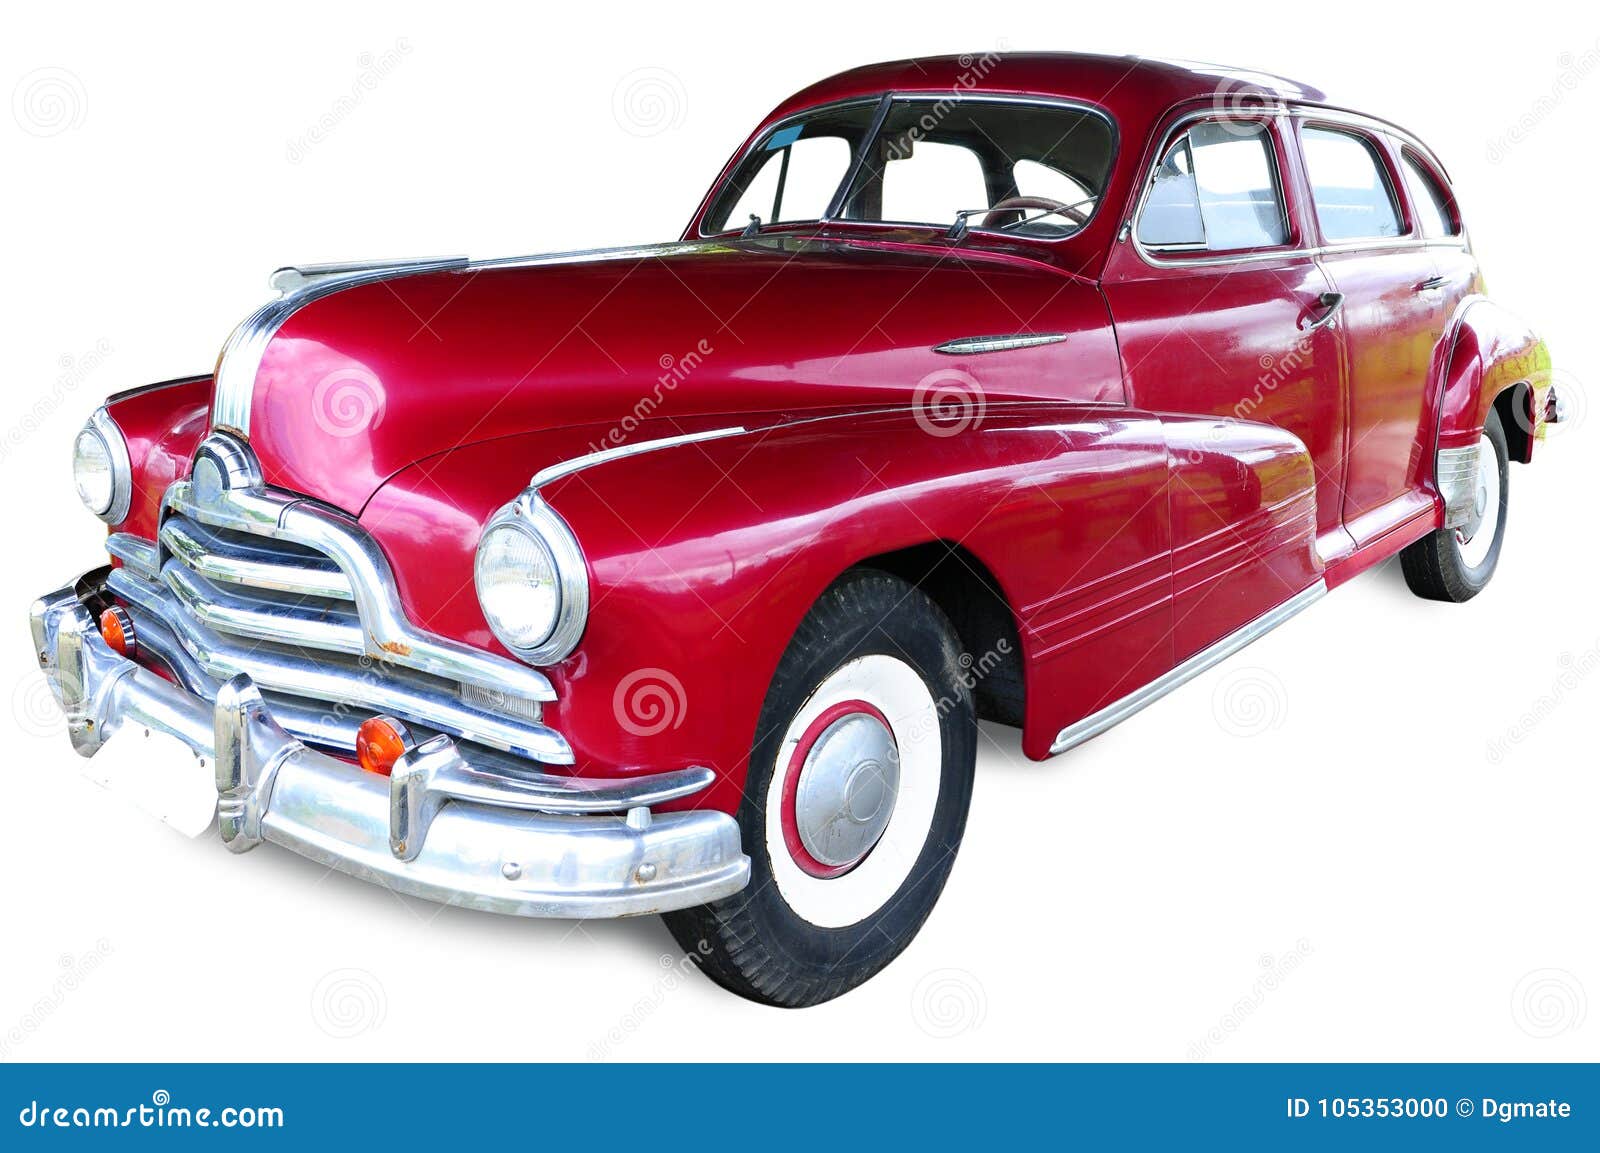 classic vintage car